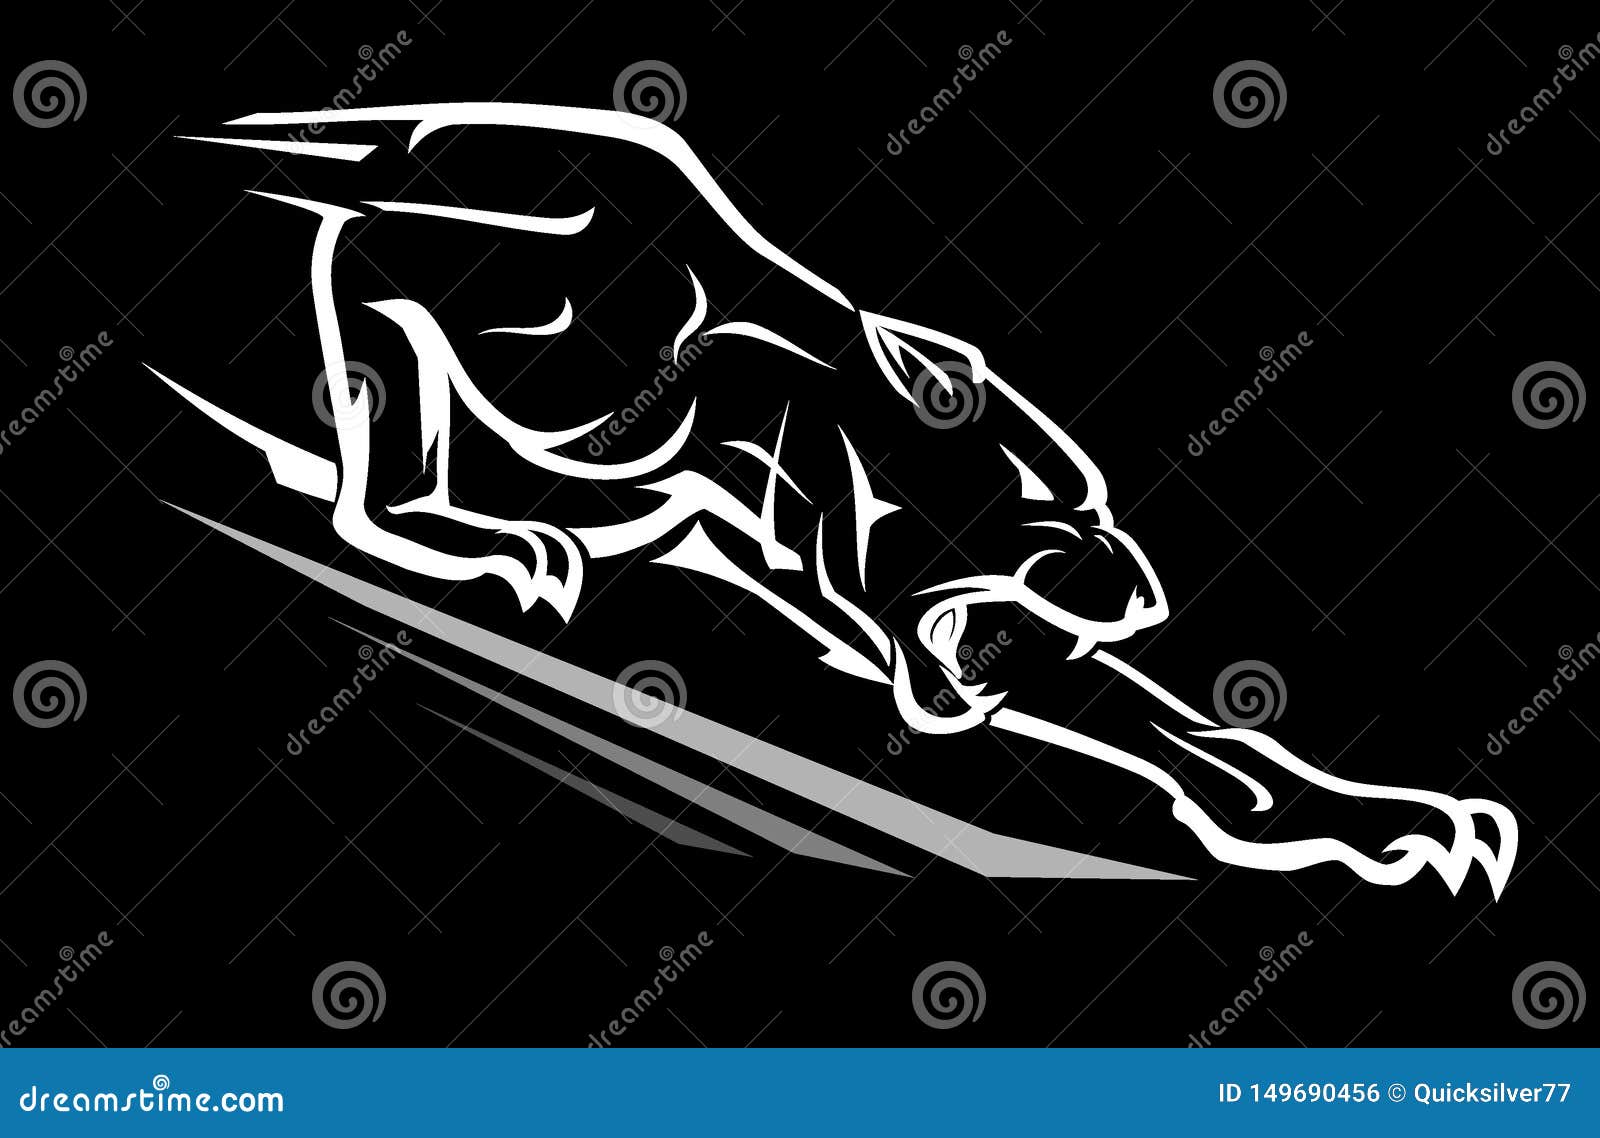 black panther reaching downward